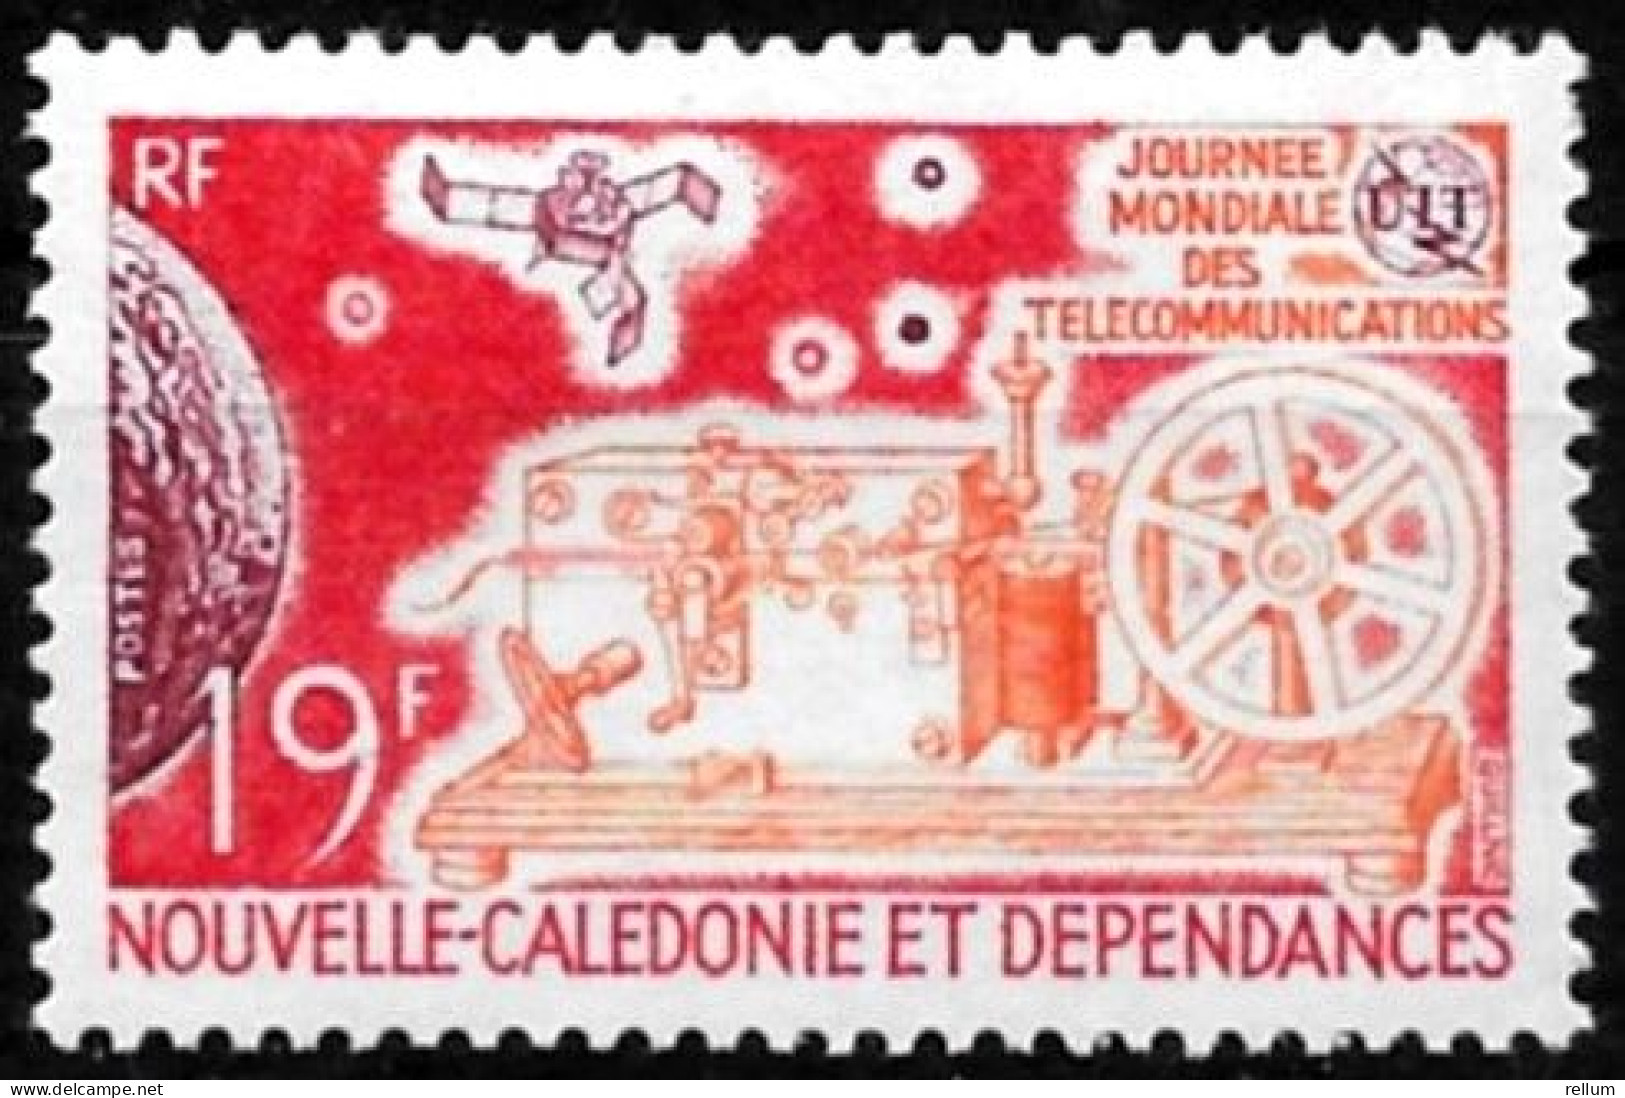 Nouvelle Calédonie 1971 - Yvert N° 374 - Michel N° 502 ** - Unused Stamps